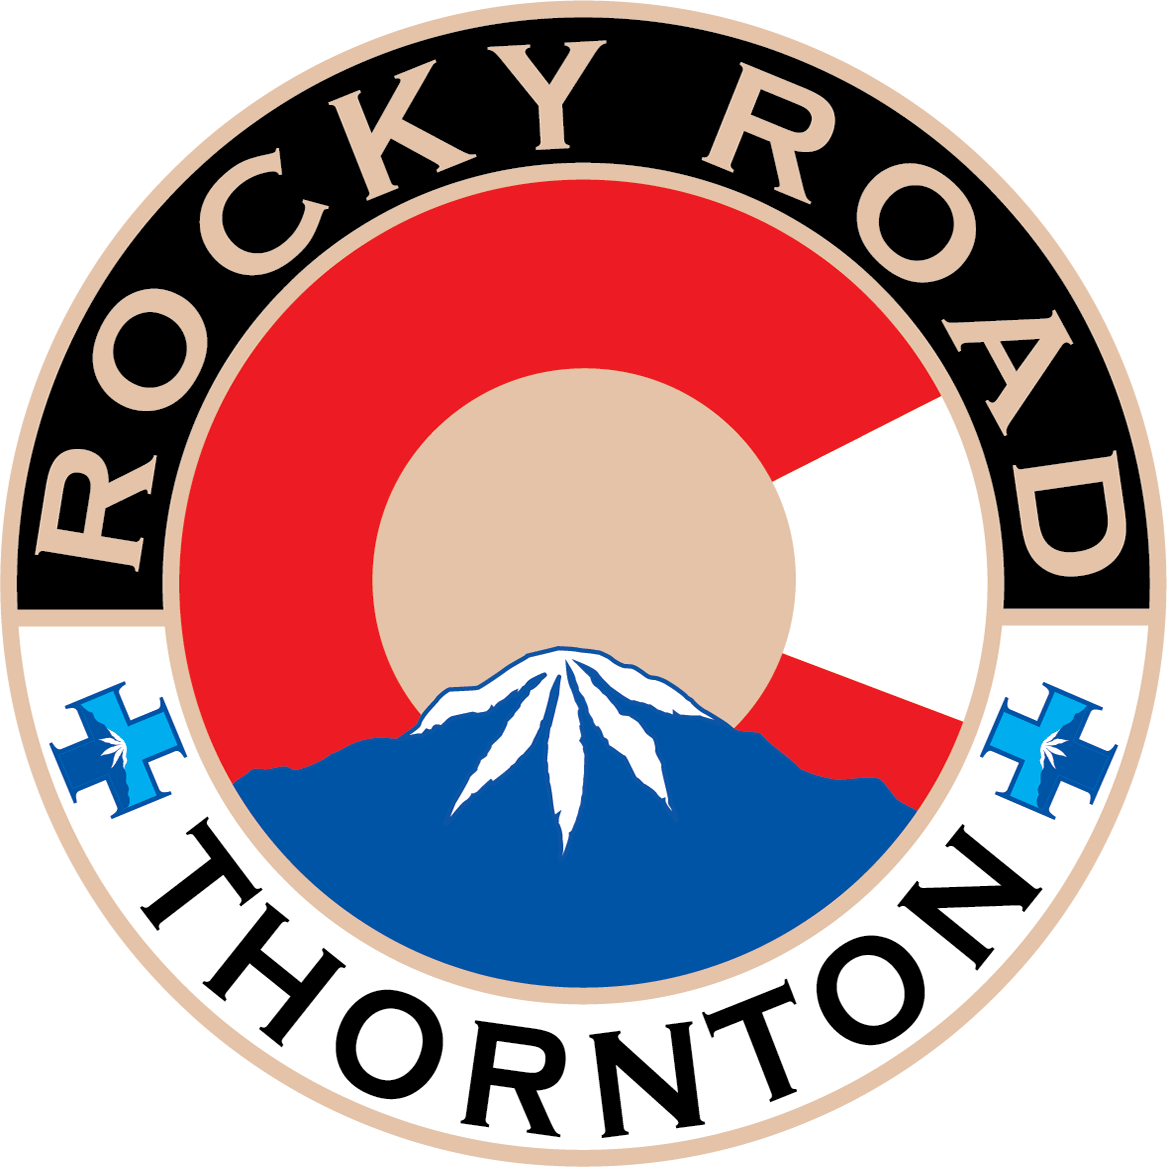 Rocky Road Thornton - Marijuana Dispensary in Thornton, CO logo